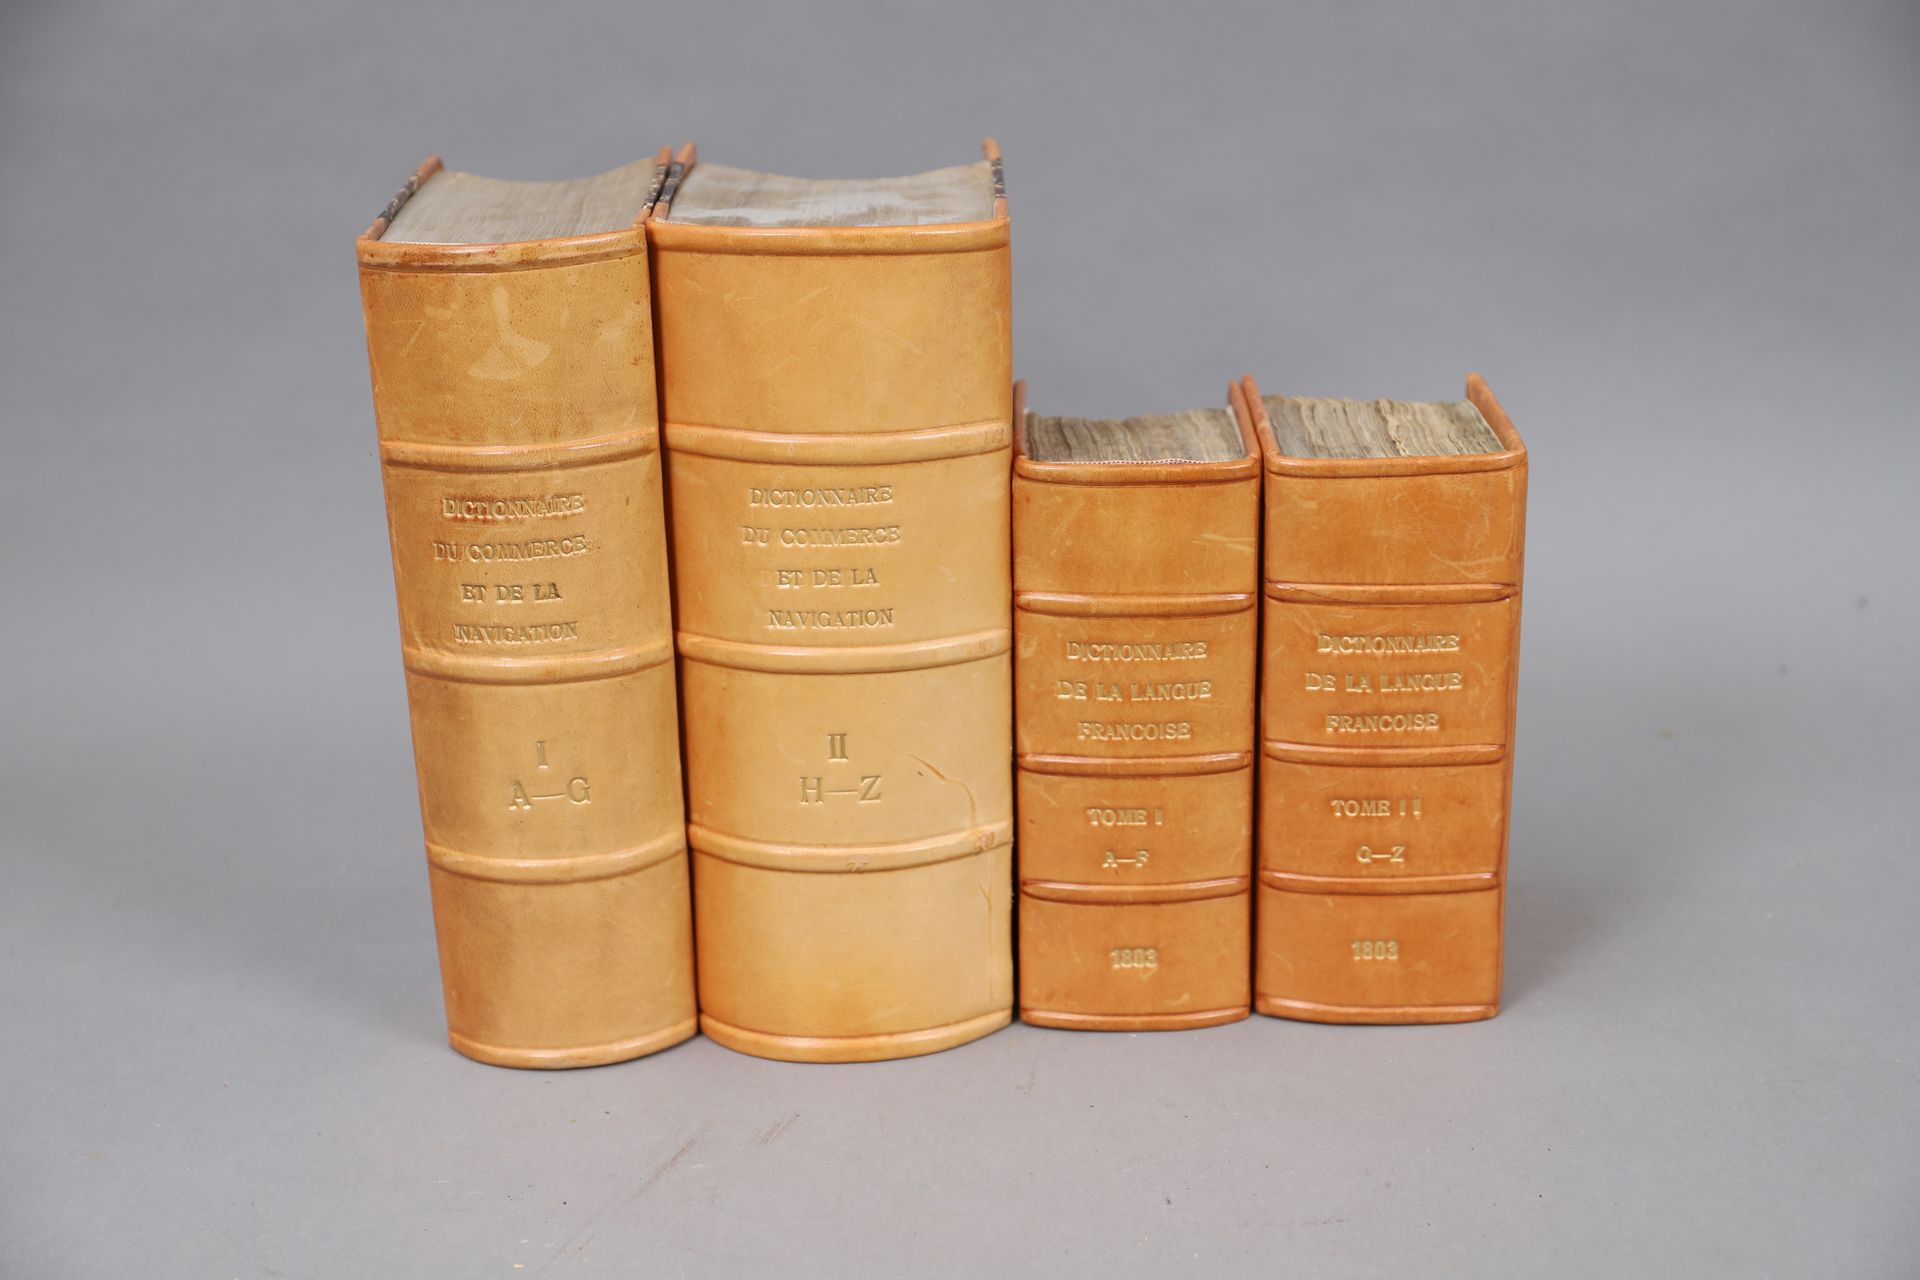 Null 贸易和导航词典》。

和《法语词典》（1803）。

4卷现代装订本。